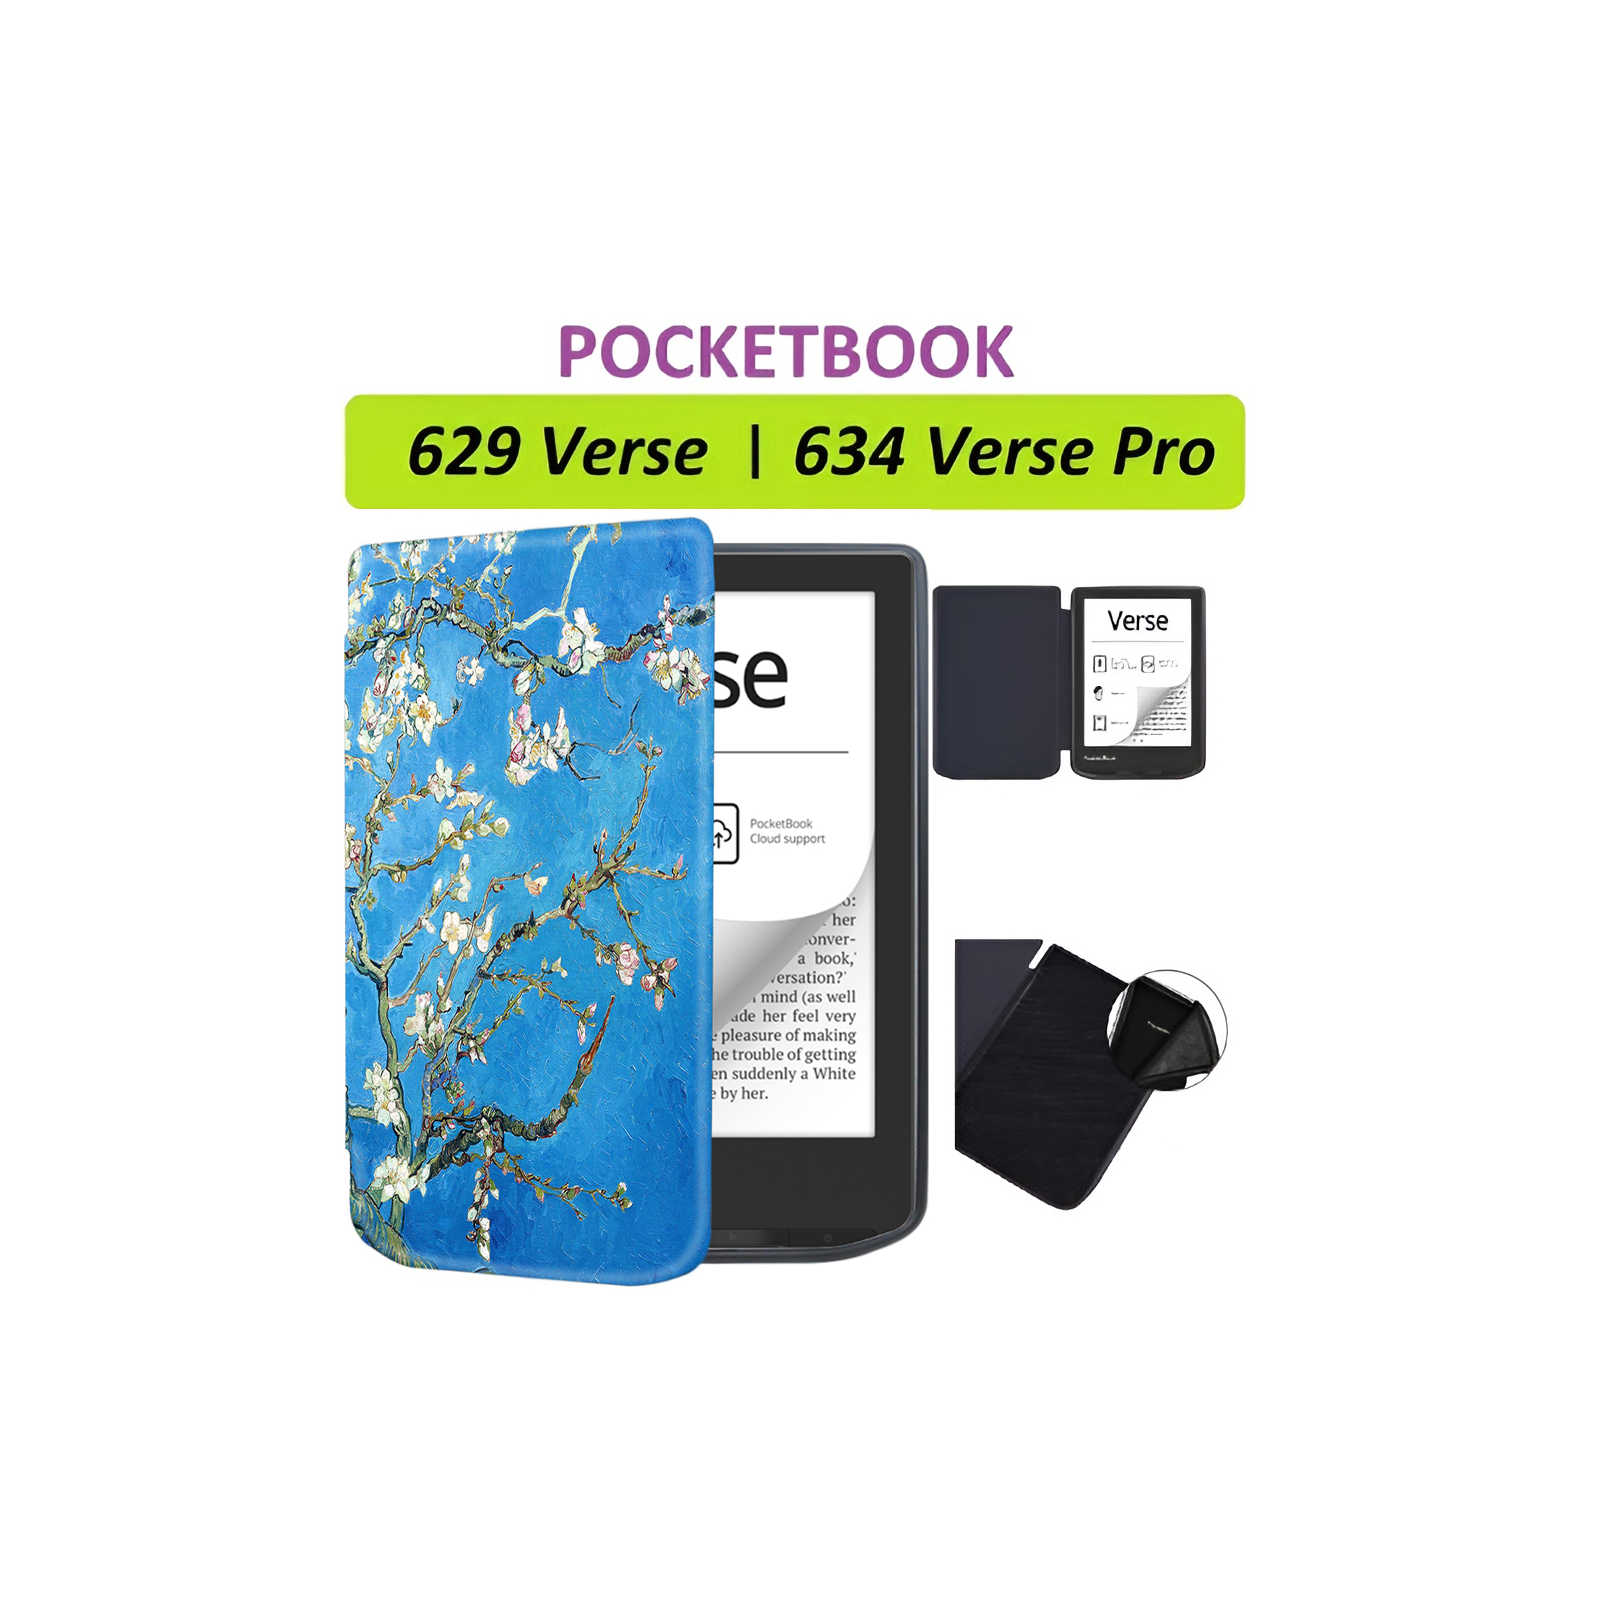 Чехол для электронной книги BeCover Smart Case PocketBook 629 Verse / 634 Verse Pro 6" Library (710974) изображение 8